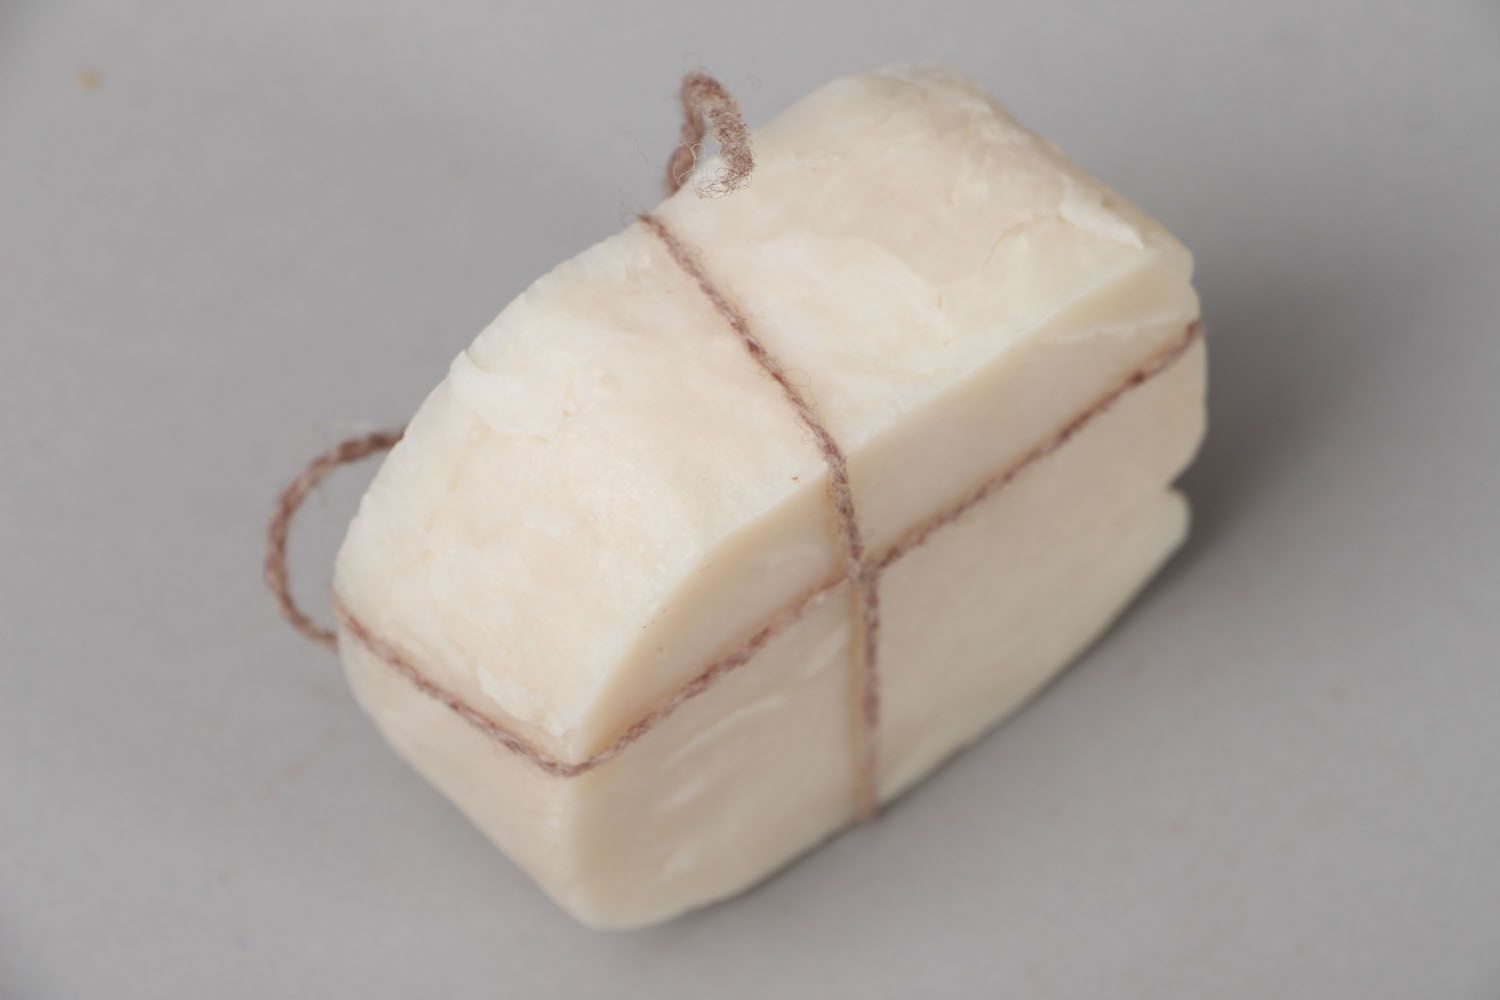 Oily homemade soap photo 2